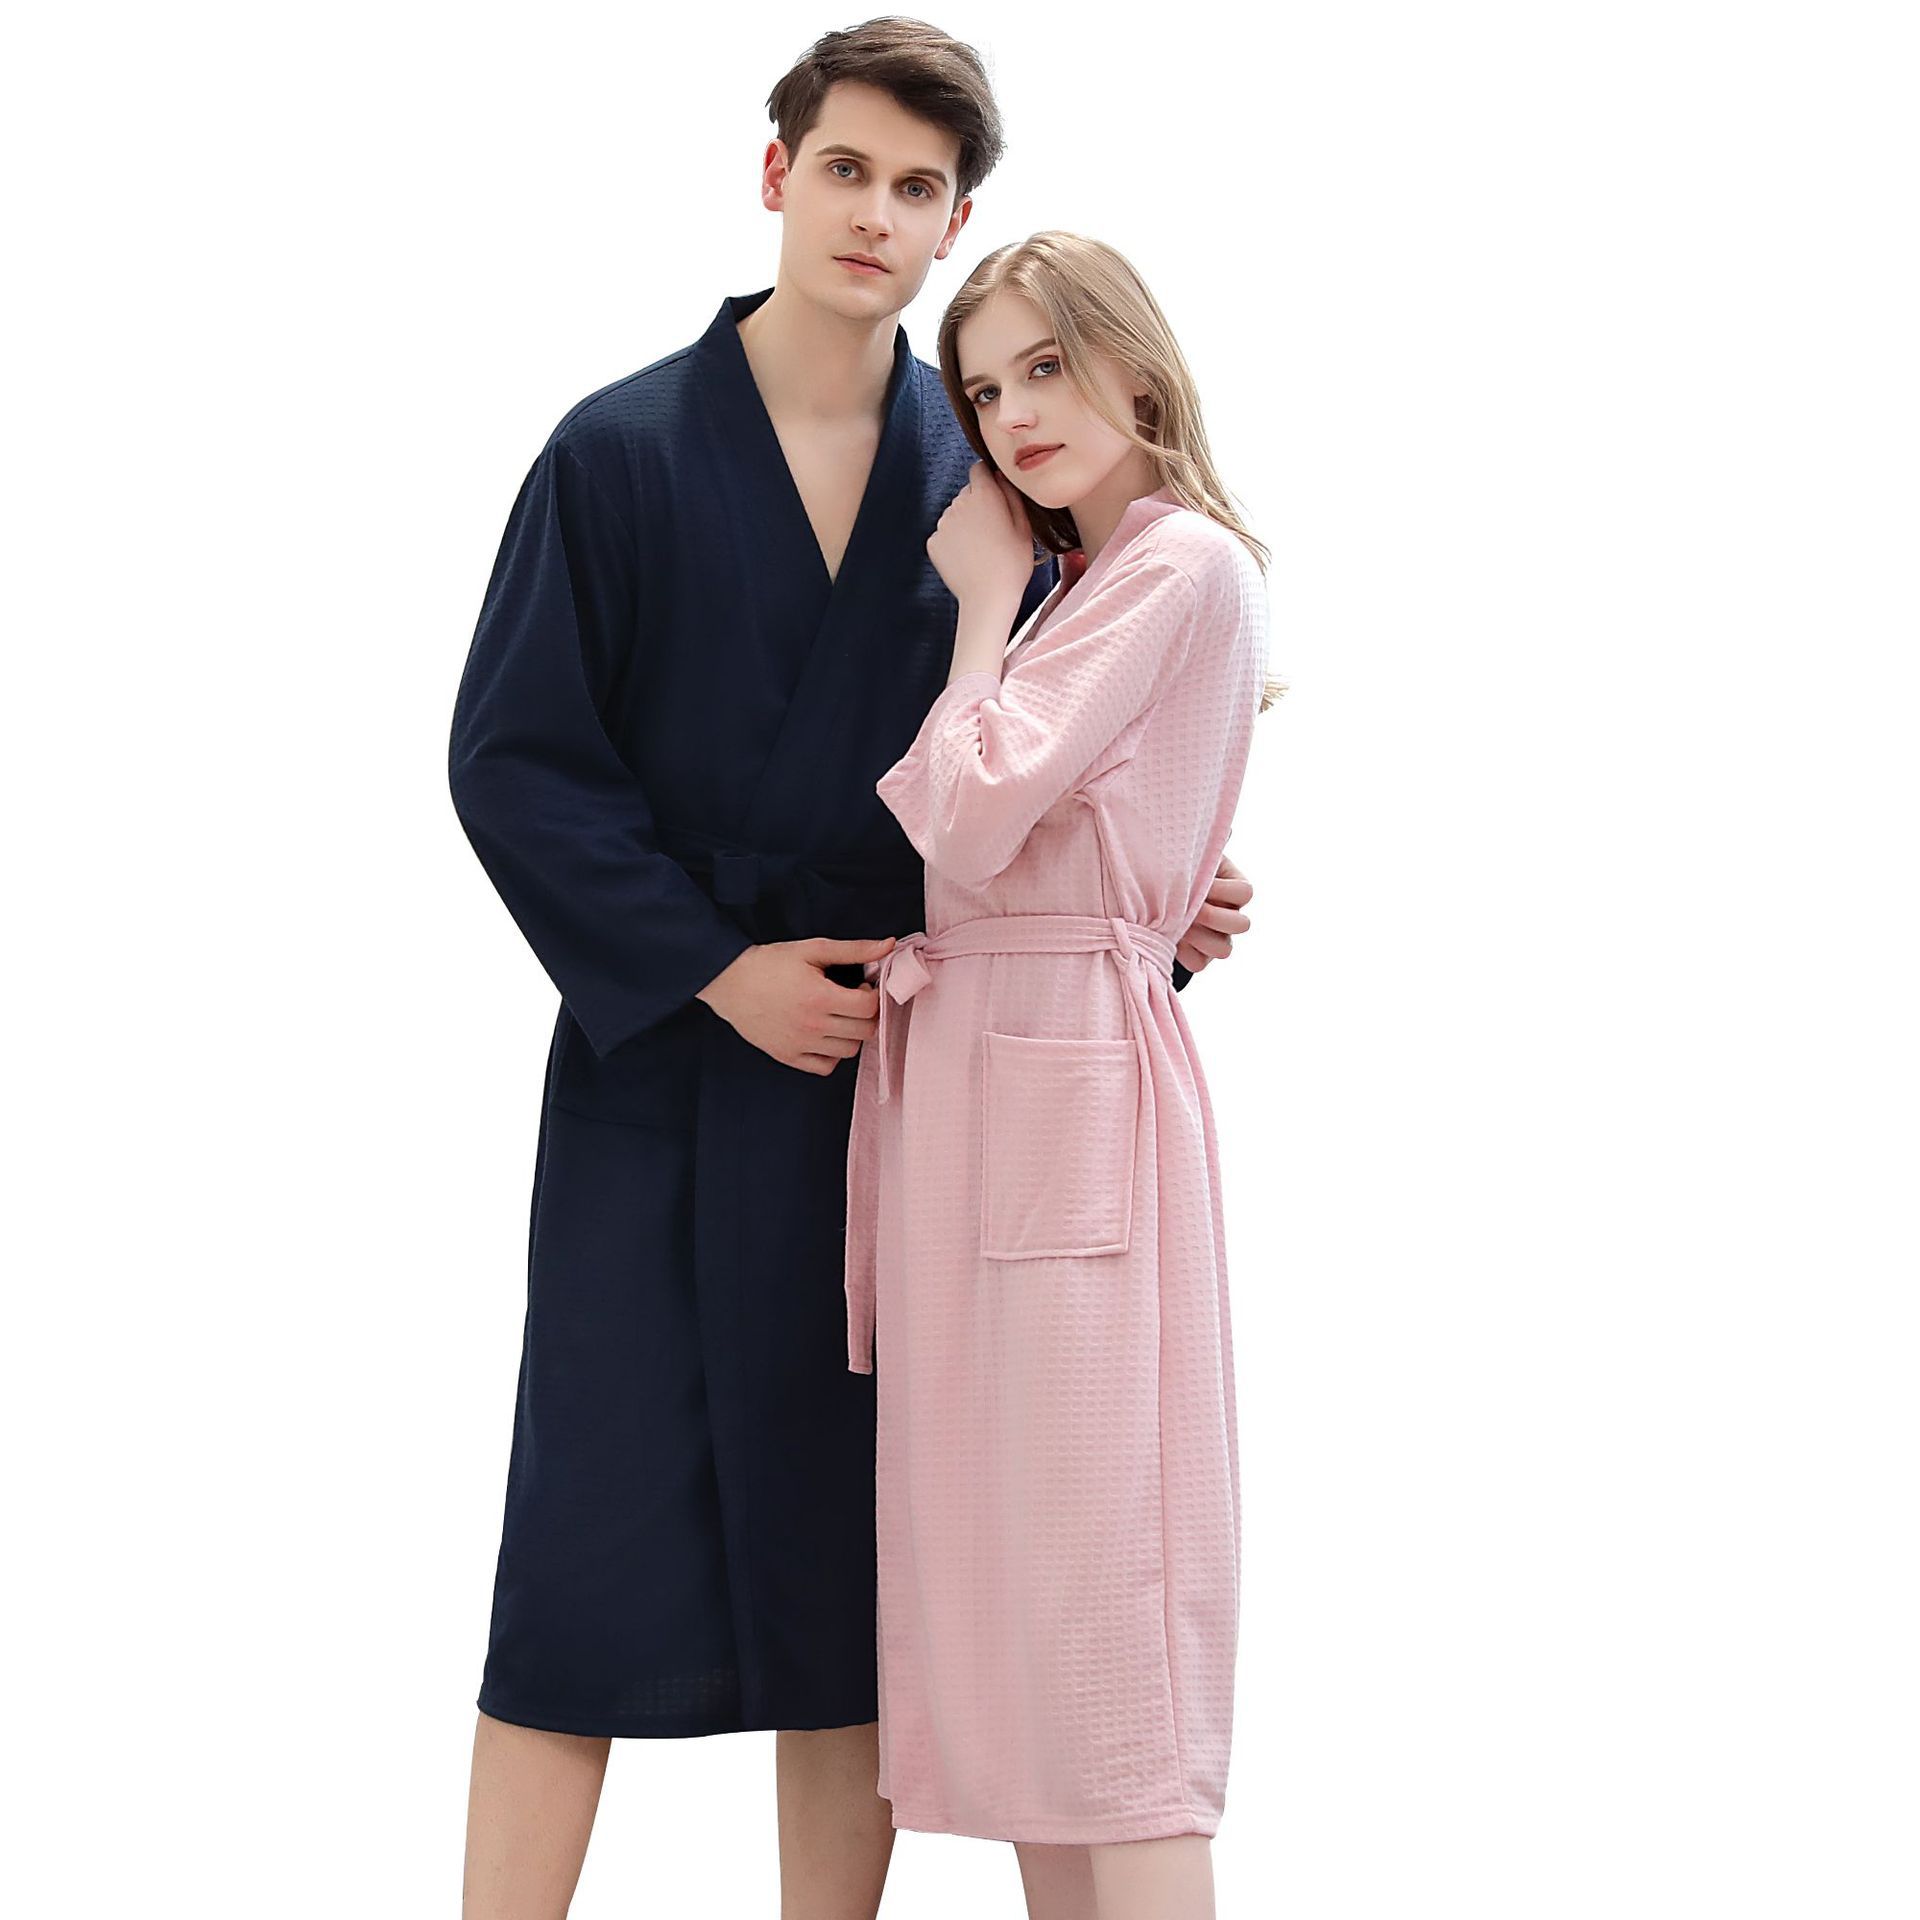 Летний тонкий банный халат для влюбленных, пижама подходит для мужчин и женщин, прямая поставка с фабрики